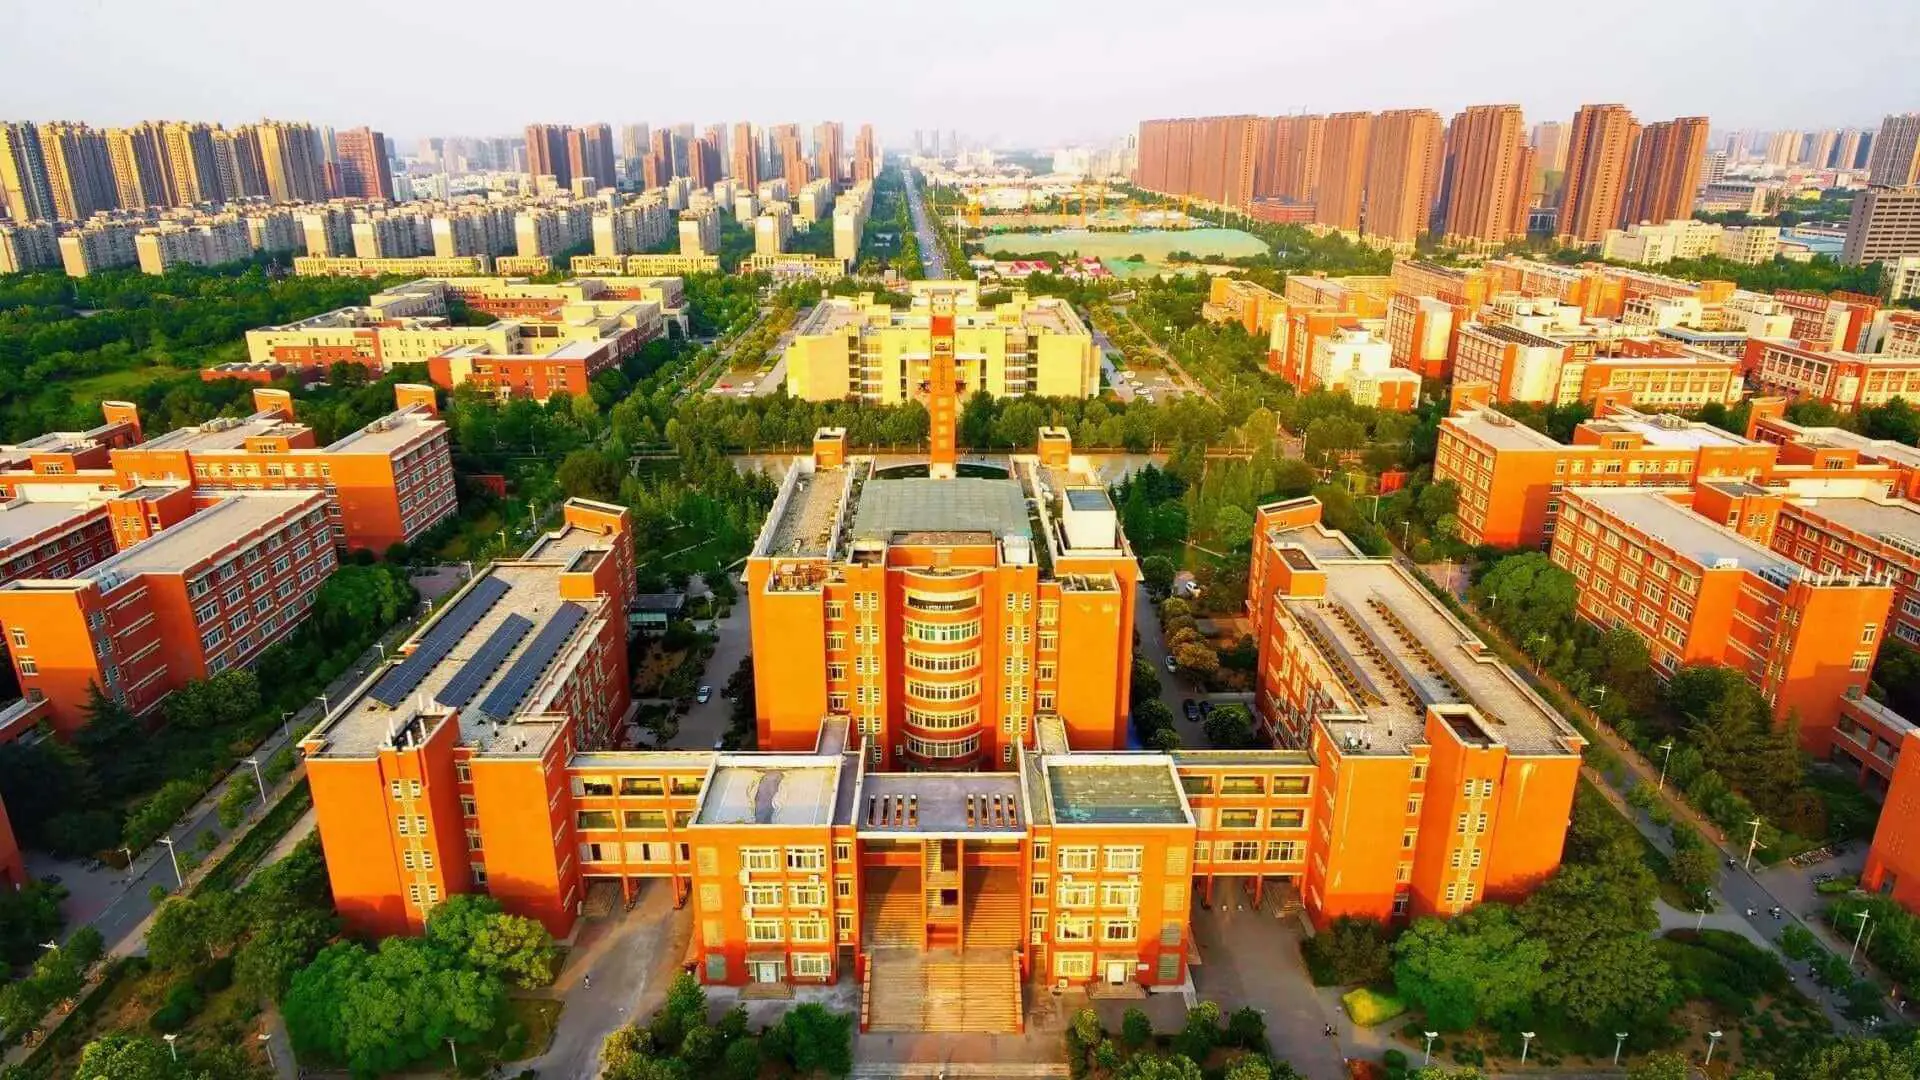 Xitoyning Zhengzhou universitetida PhD bosqichini toʻliq moliyalashtirilgan holda oʻqish uchun President Scholarship granti